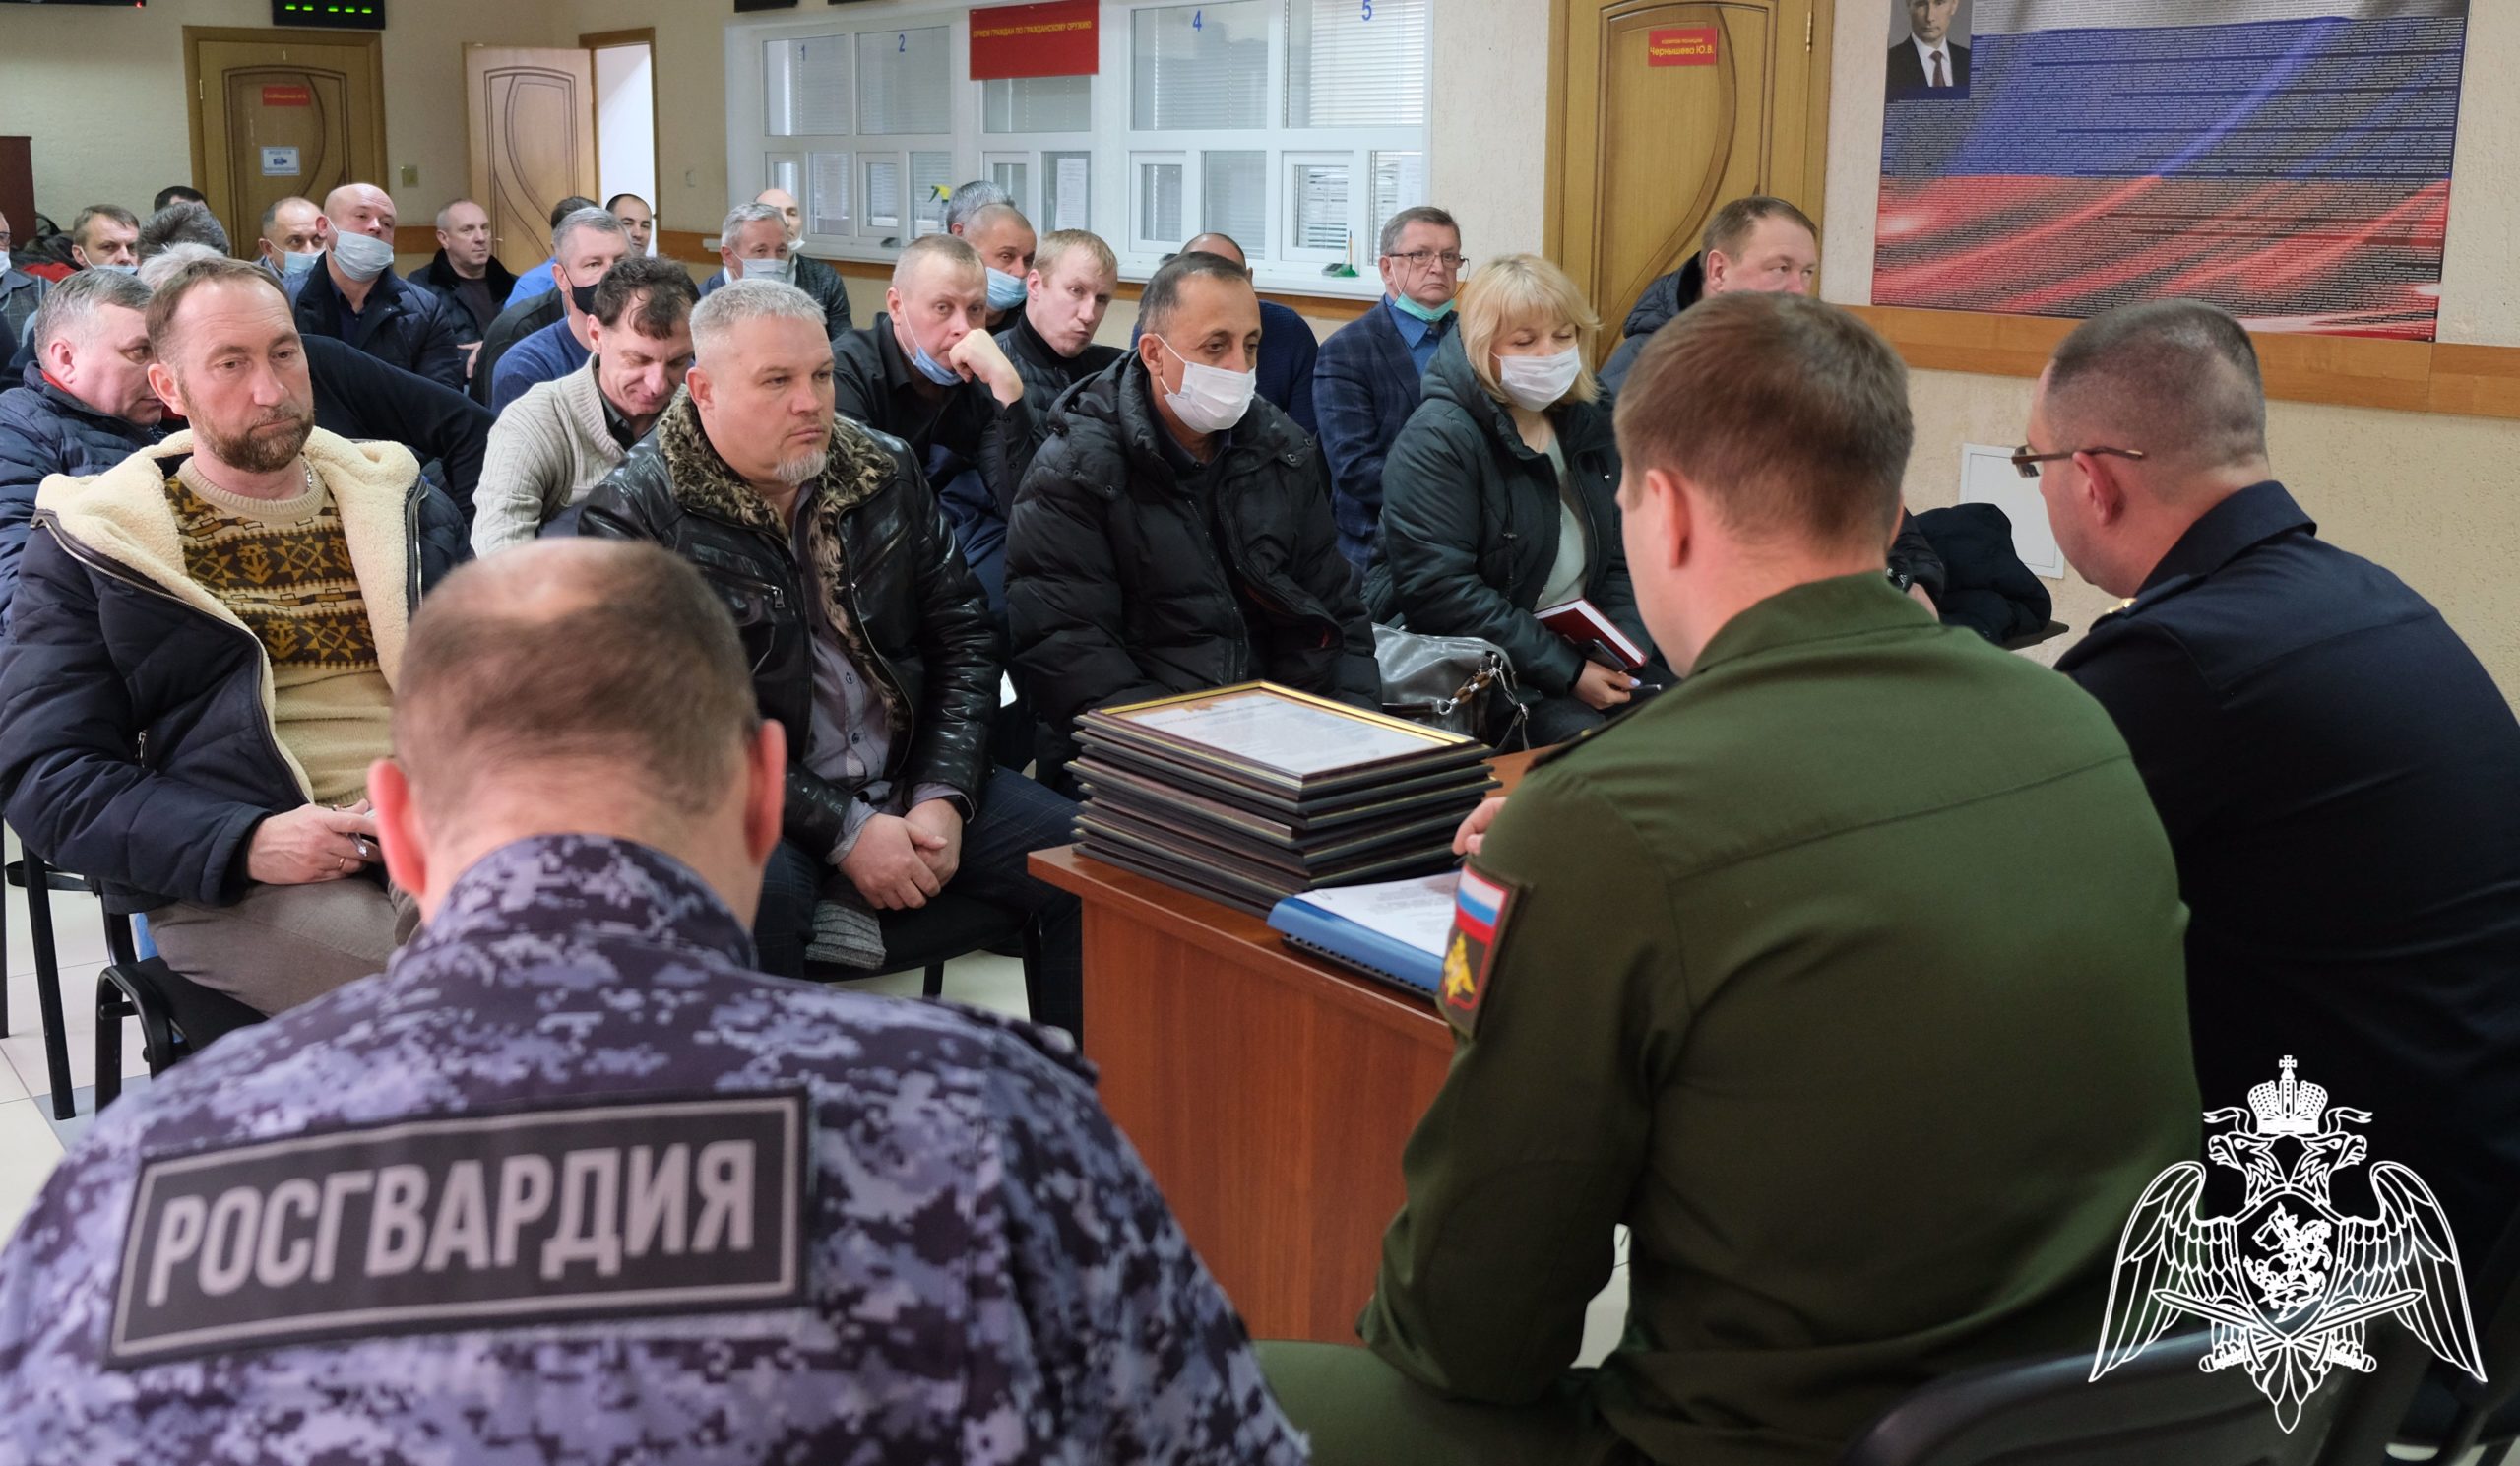 Росгвардия Курской области провела заседание по вопросам частной охранной деятельности